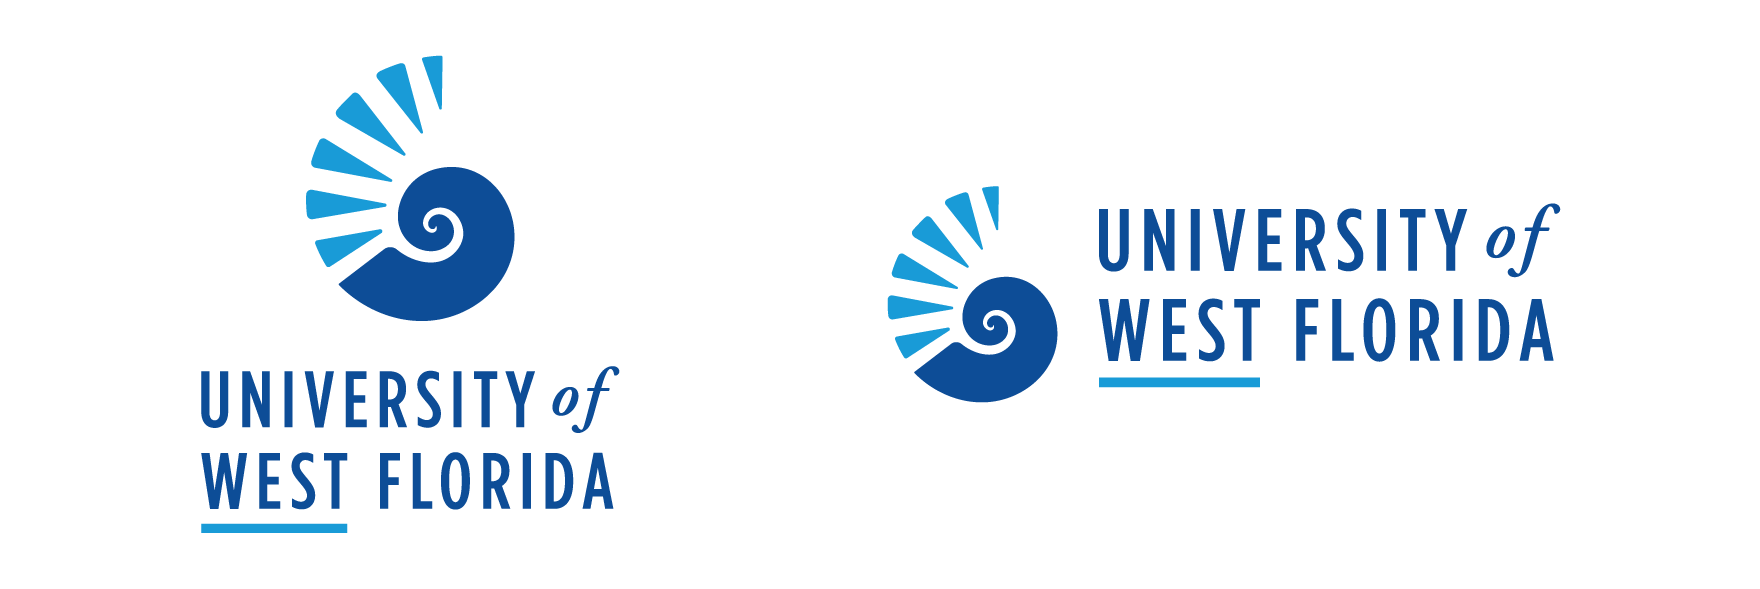 University of West Florida Logo - Primary Logo. University of West Florida